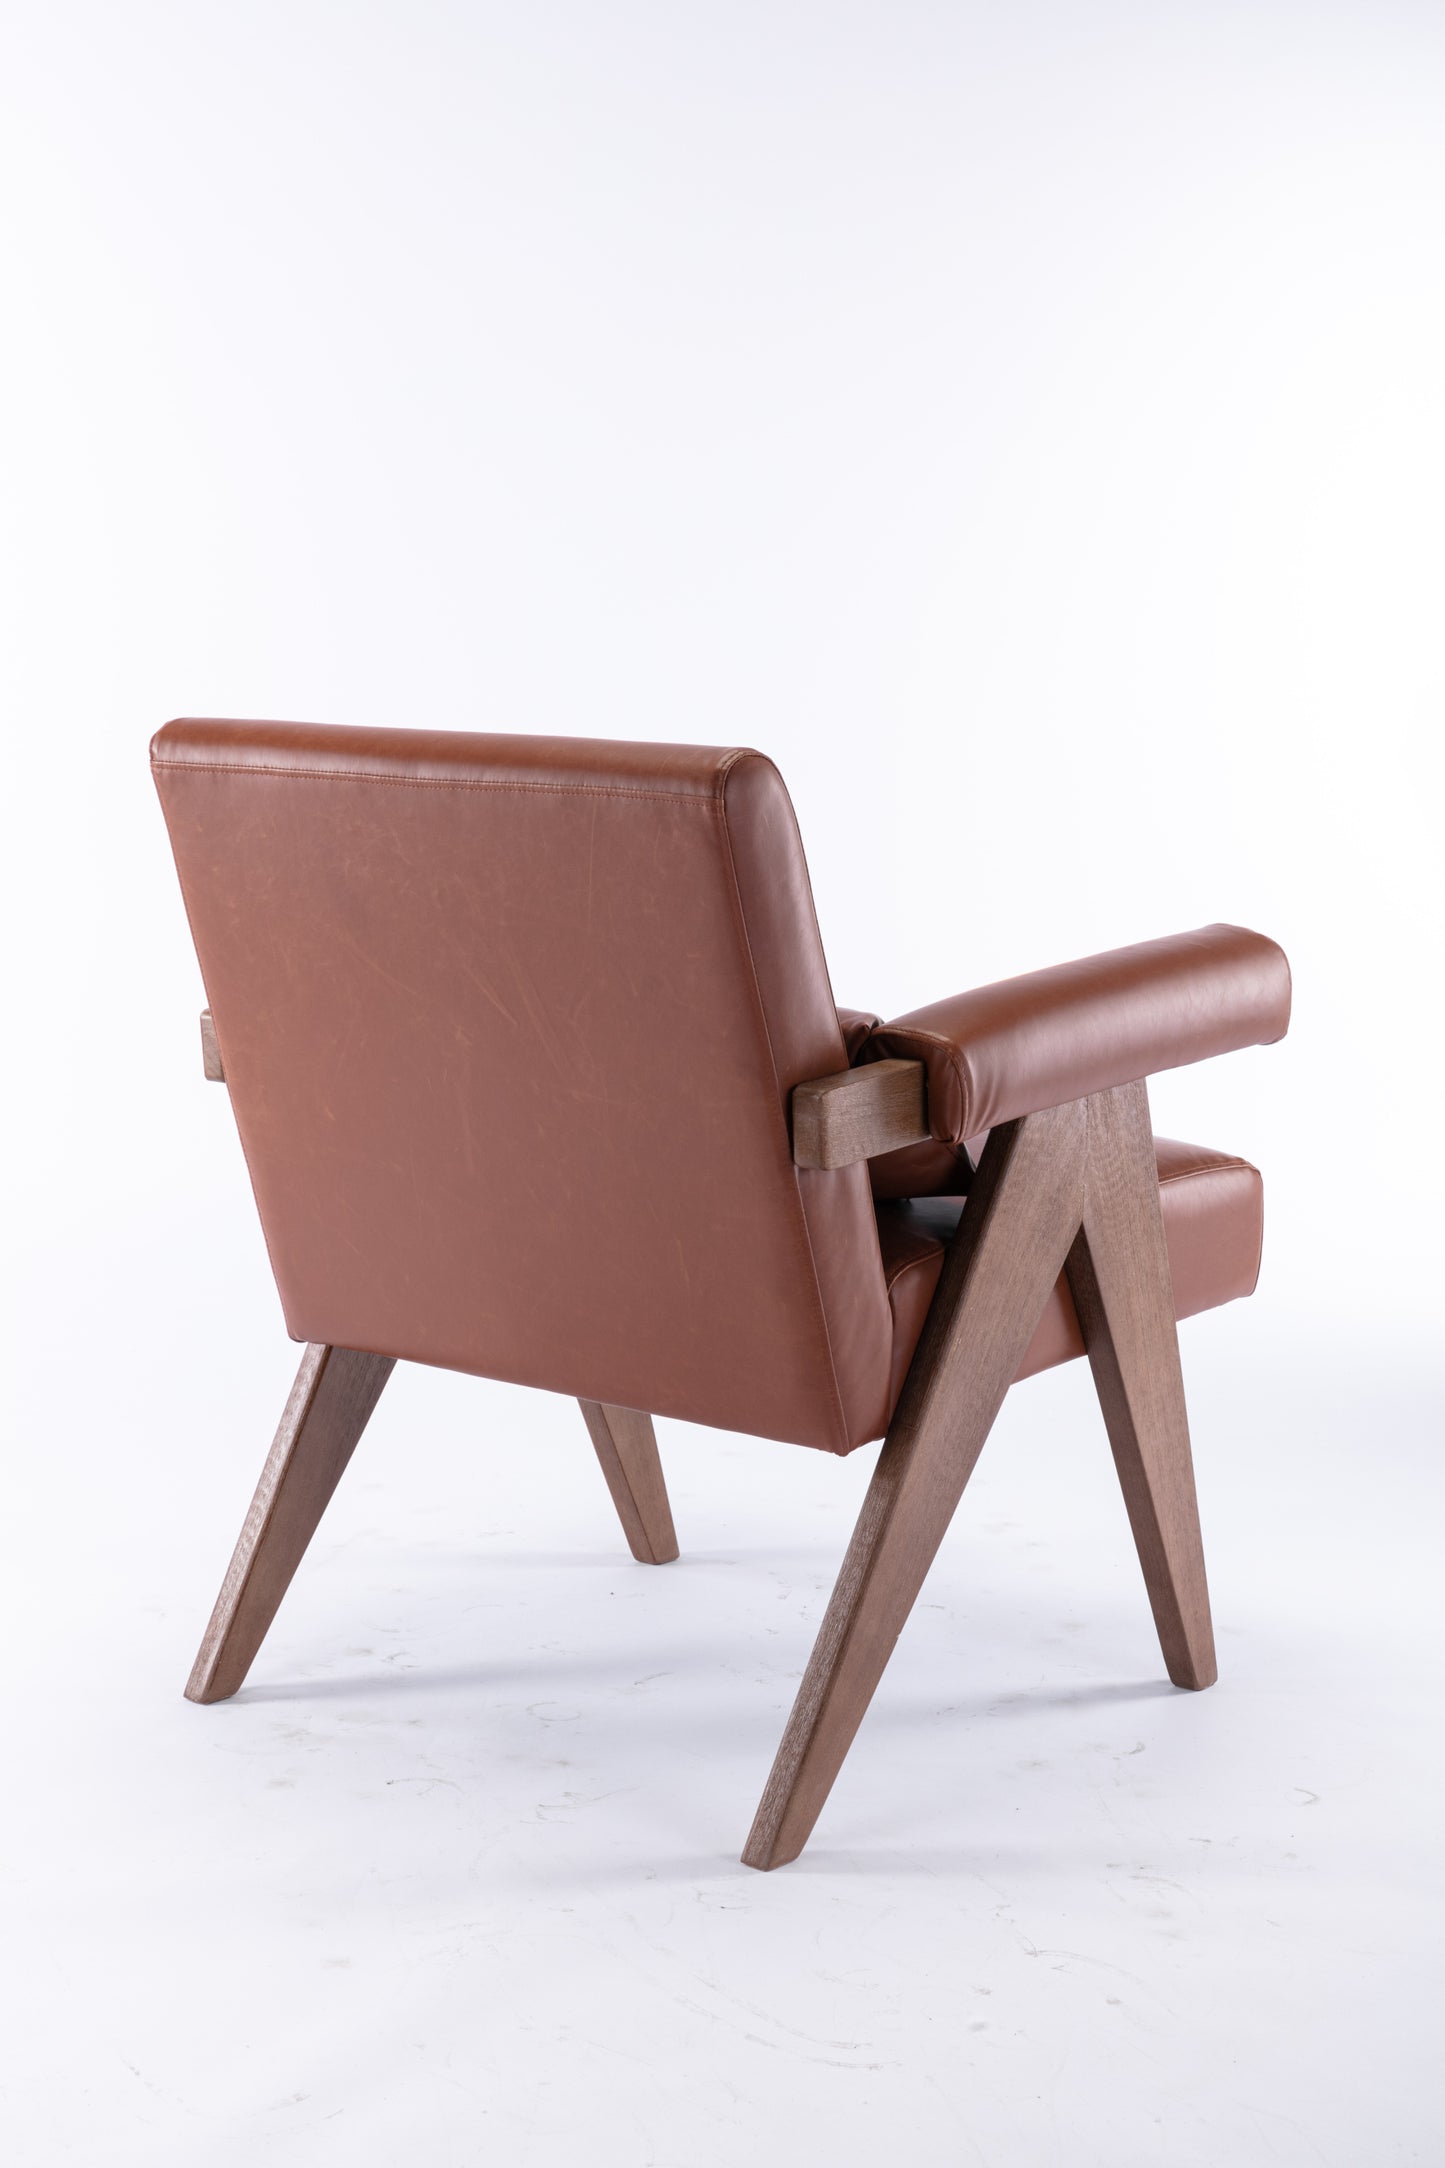 Lenox Mid Century Faux Leather Cognac Lounge Accent Arm Chair